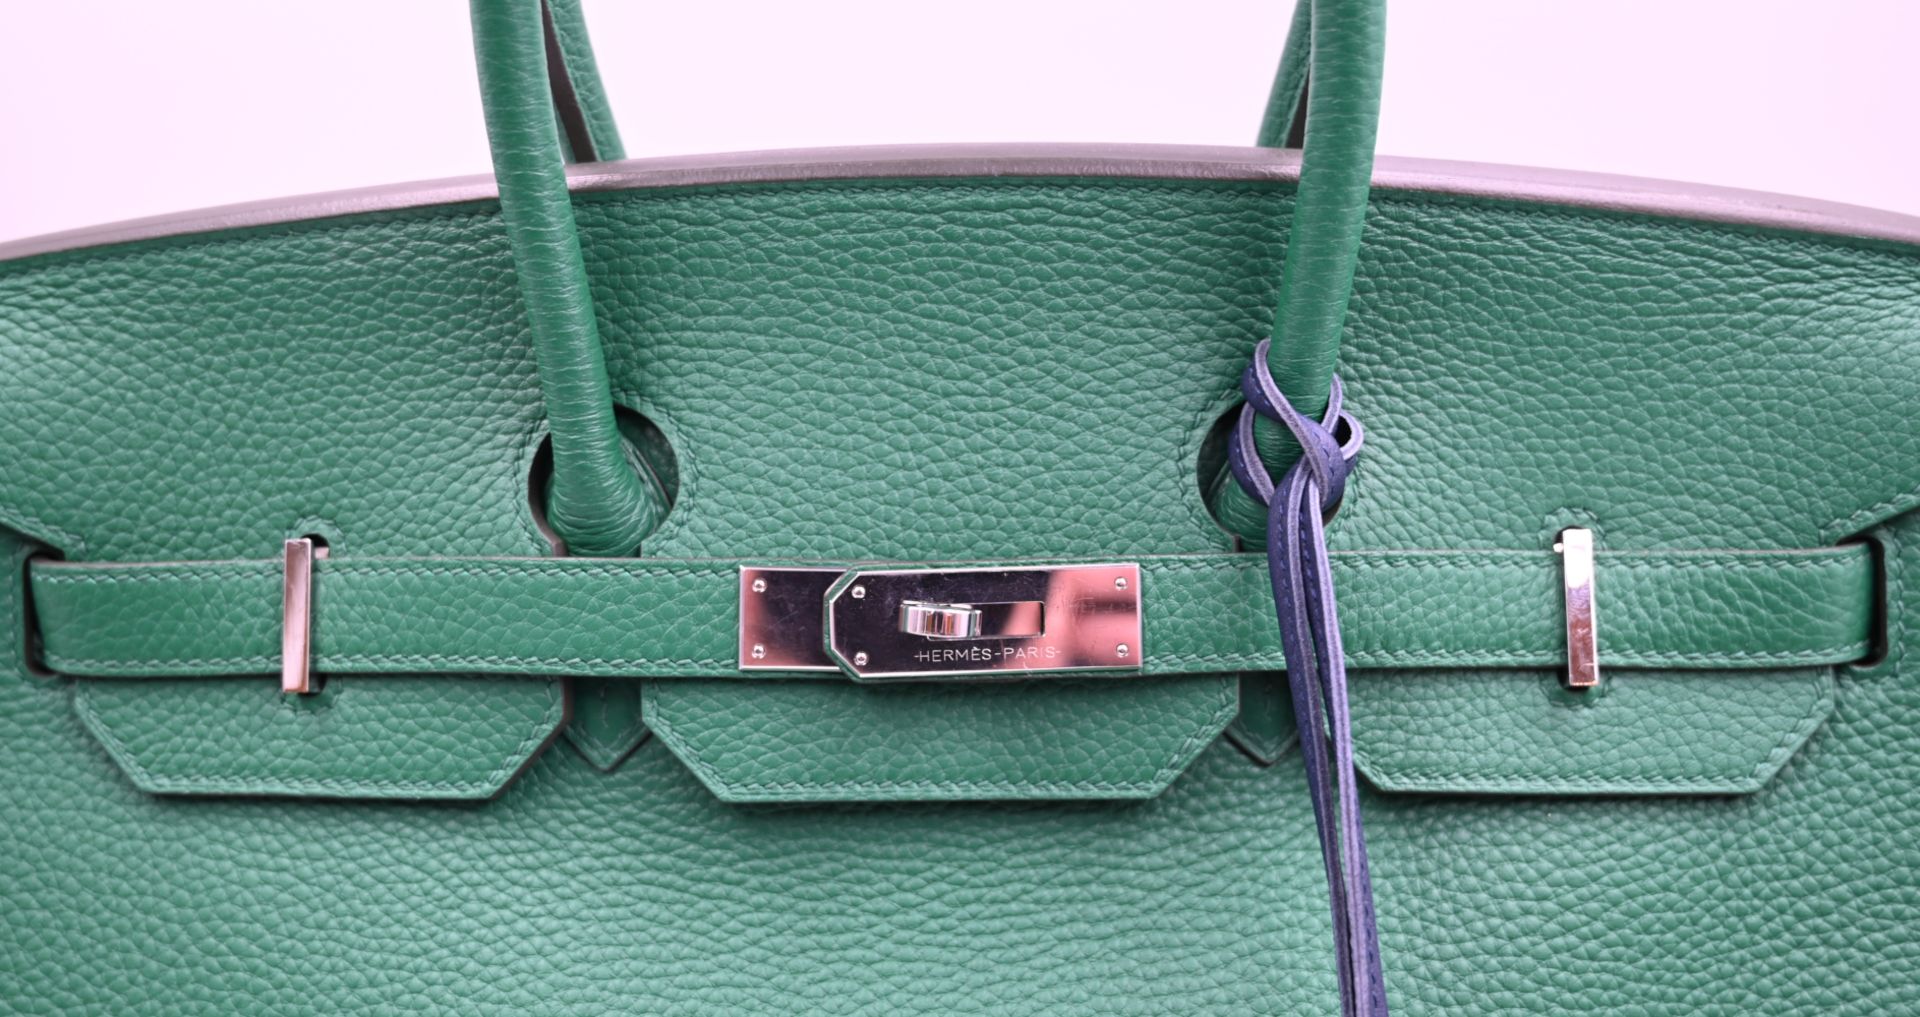 1 Damenhandtasche HERMÈS Modell: Birkin 35 grün - Bild 3 aus 13